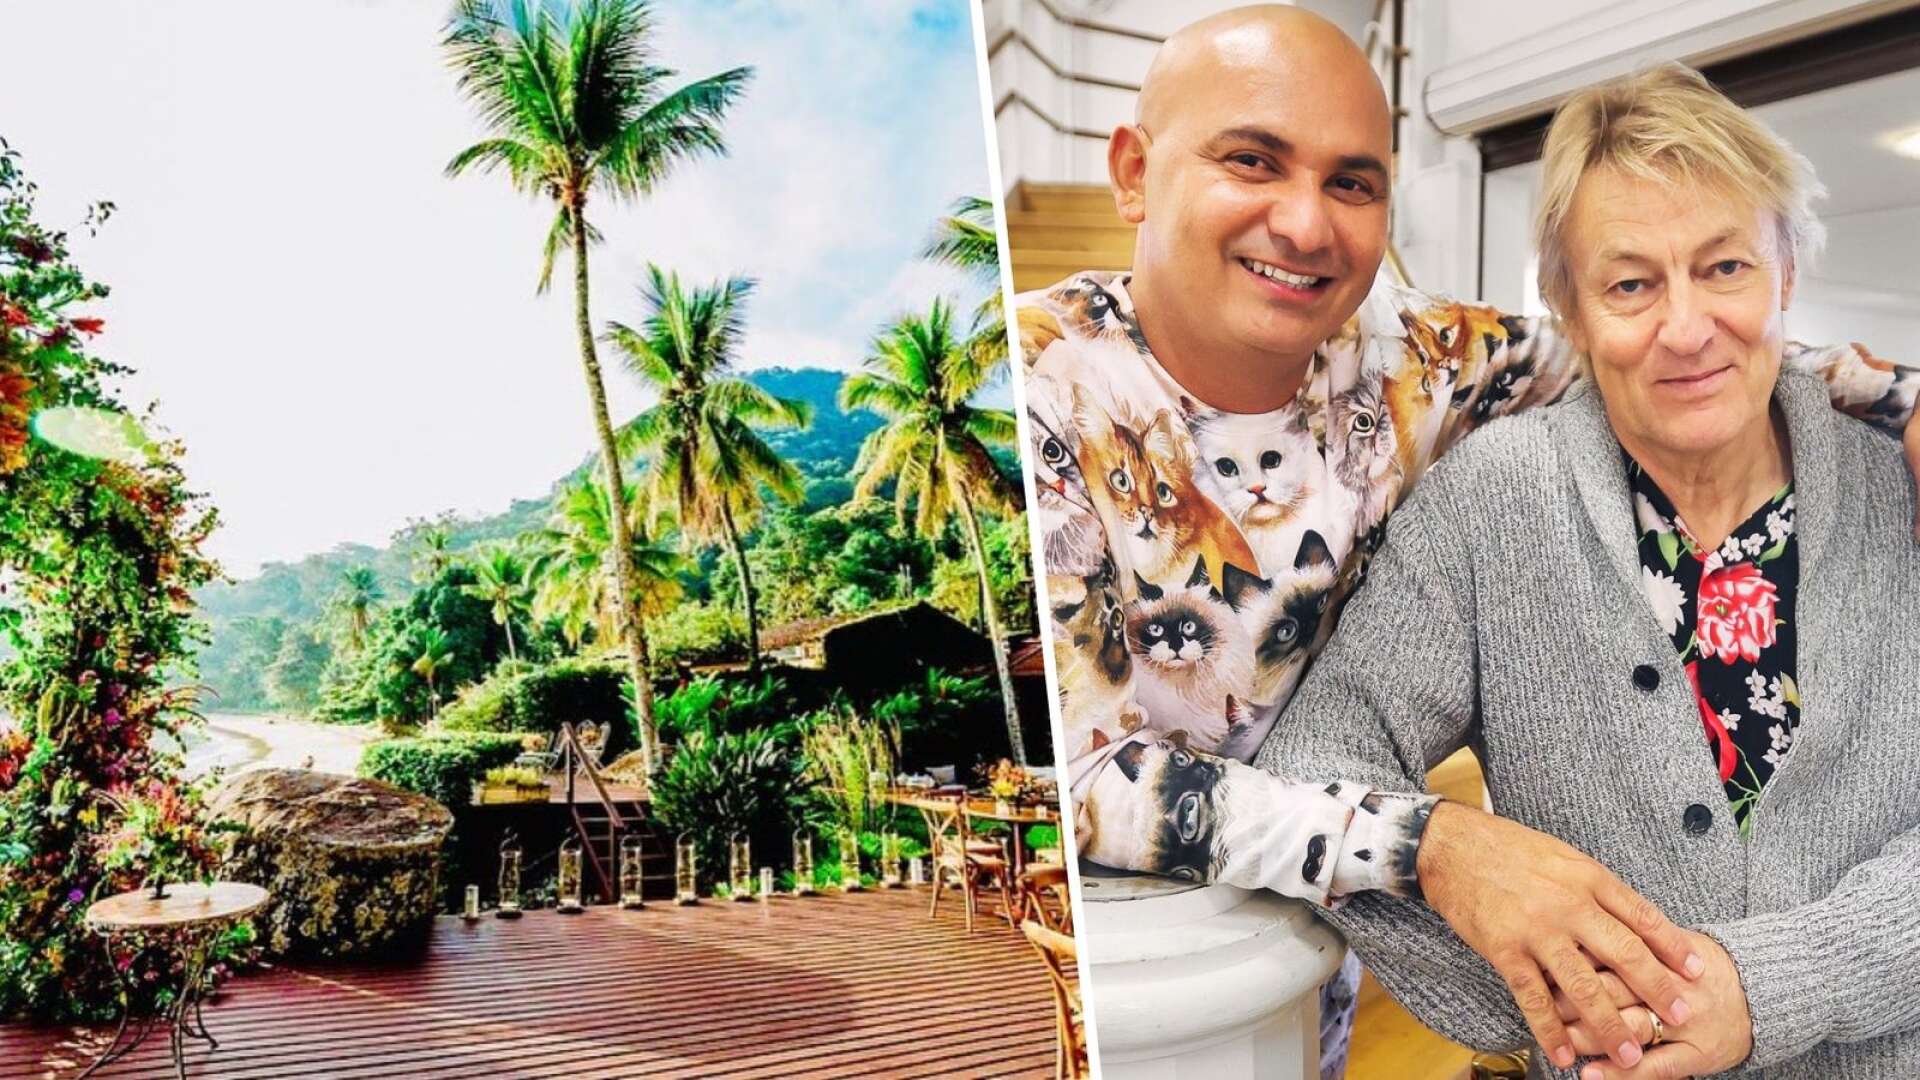 Junior och Lars Lerin har ett hotell ihop i Brasilien. Deras bilder från den strandnära pärlan gör succé i sociala medier.